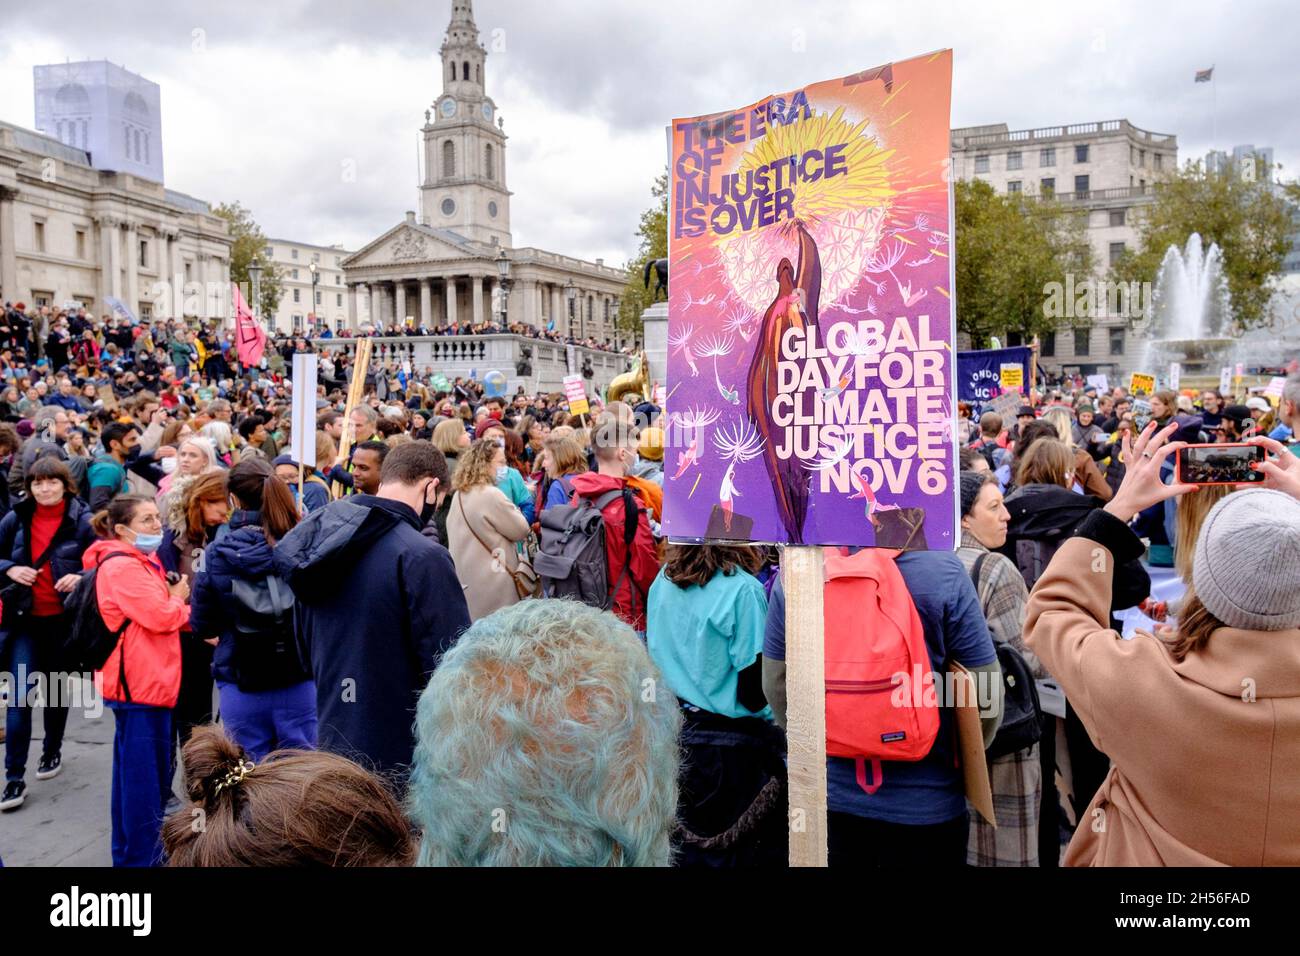 Los activistas ambientales se congregan en Trafalgar Square el Día Mundial por la Justicia Climática, Londres, Reino Unido. Foto de stock